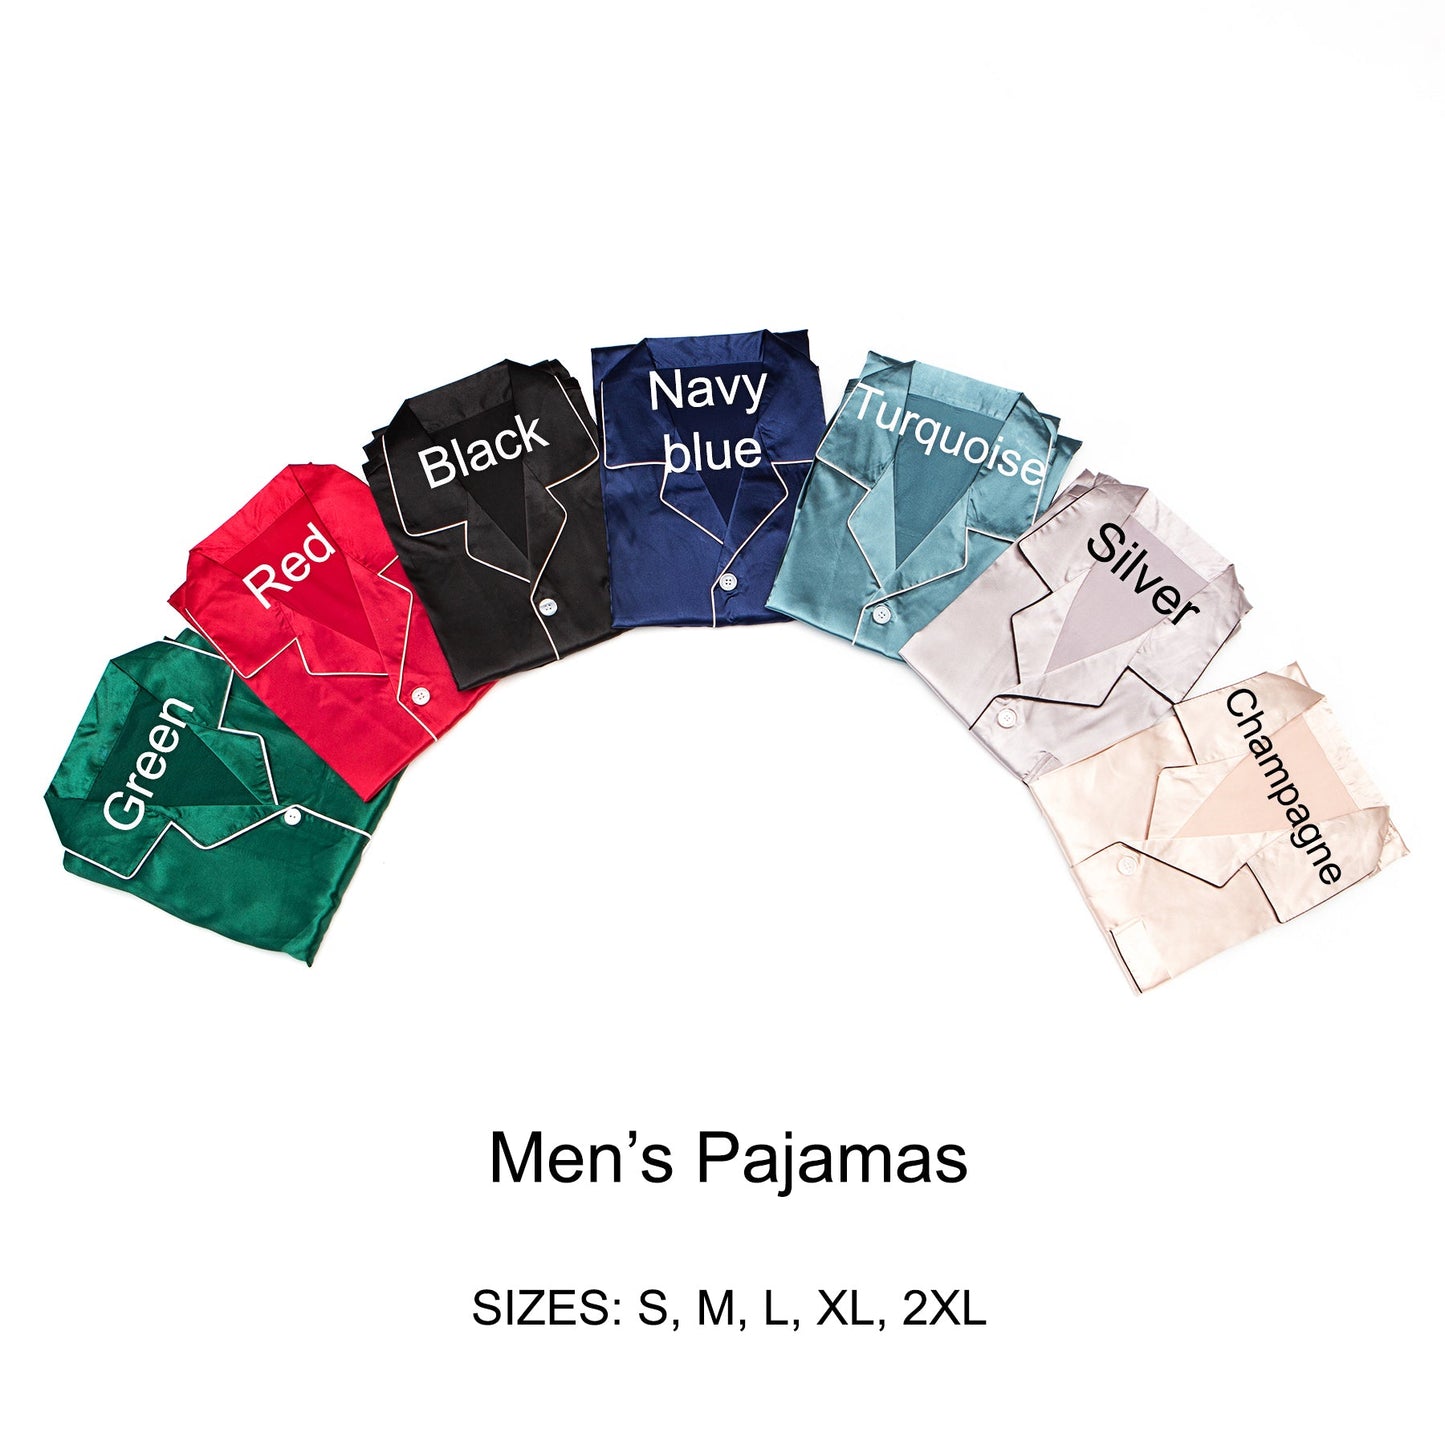 Men’s Satin Pajama Set Short Sleeves + Pants - Men’s Pajamas